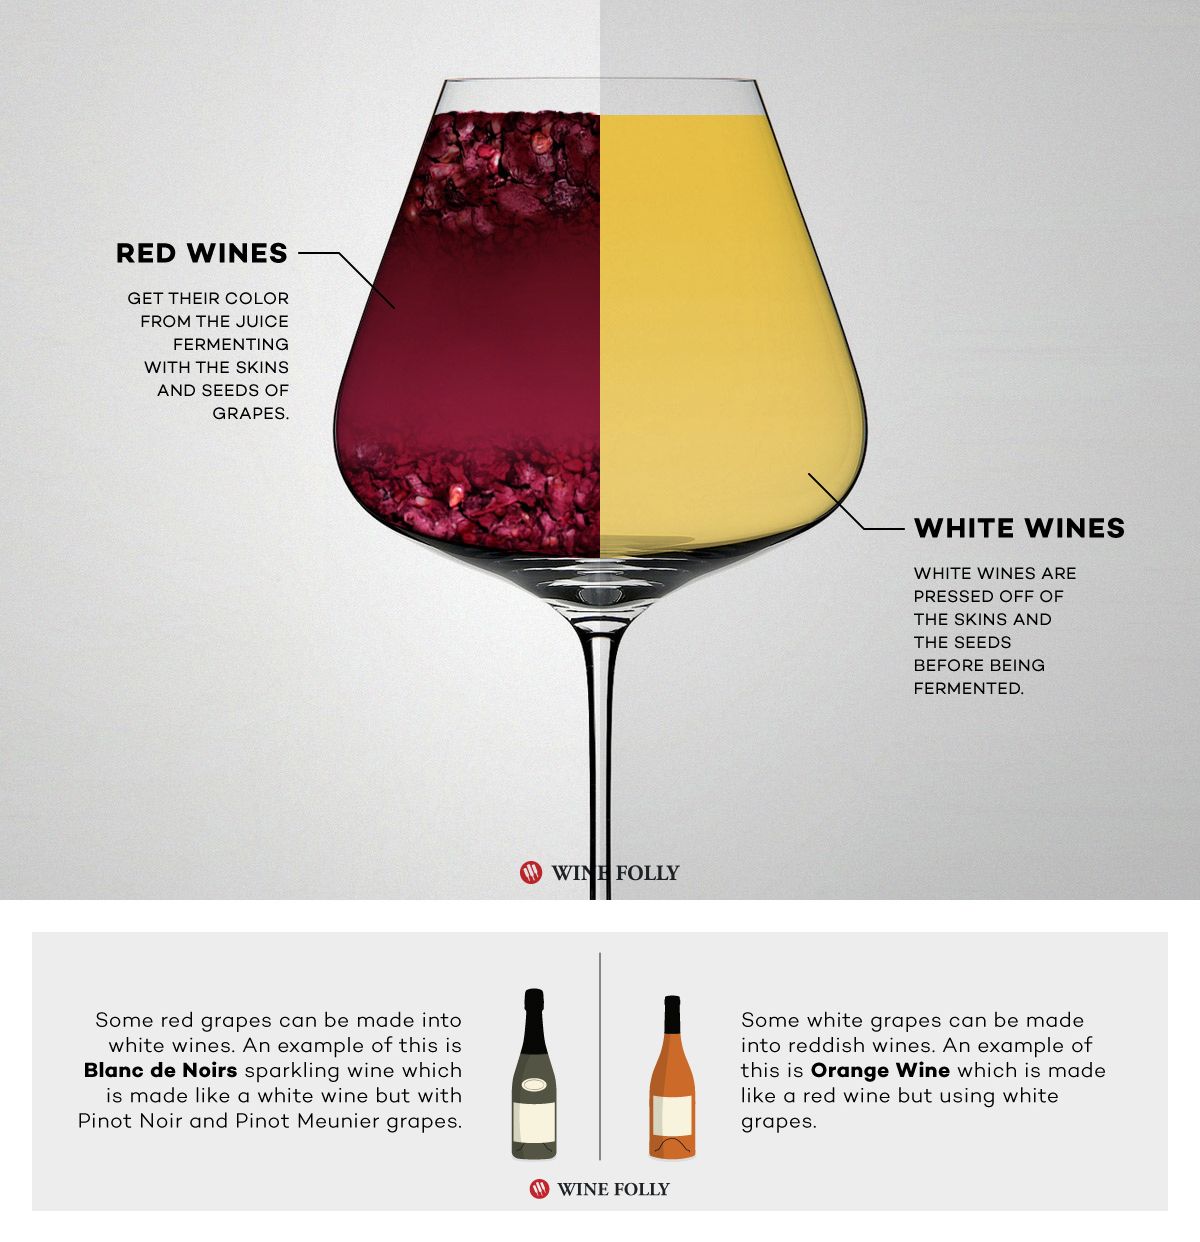 Raudonasis vynas prieš baltąjį vyną „Wine Folly“ fermentuoja skirtingai